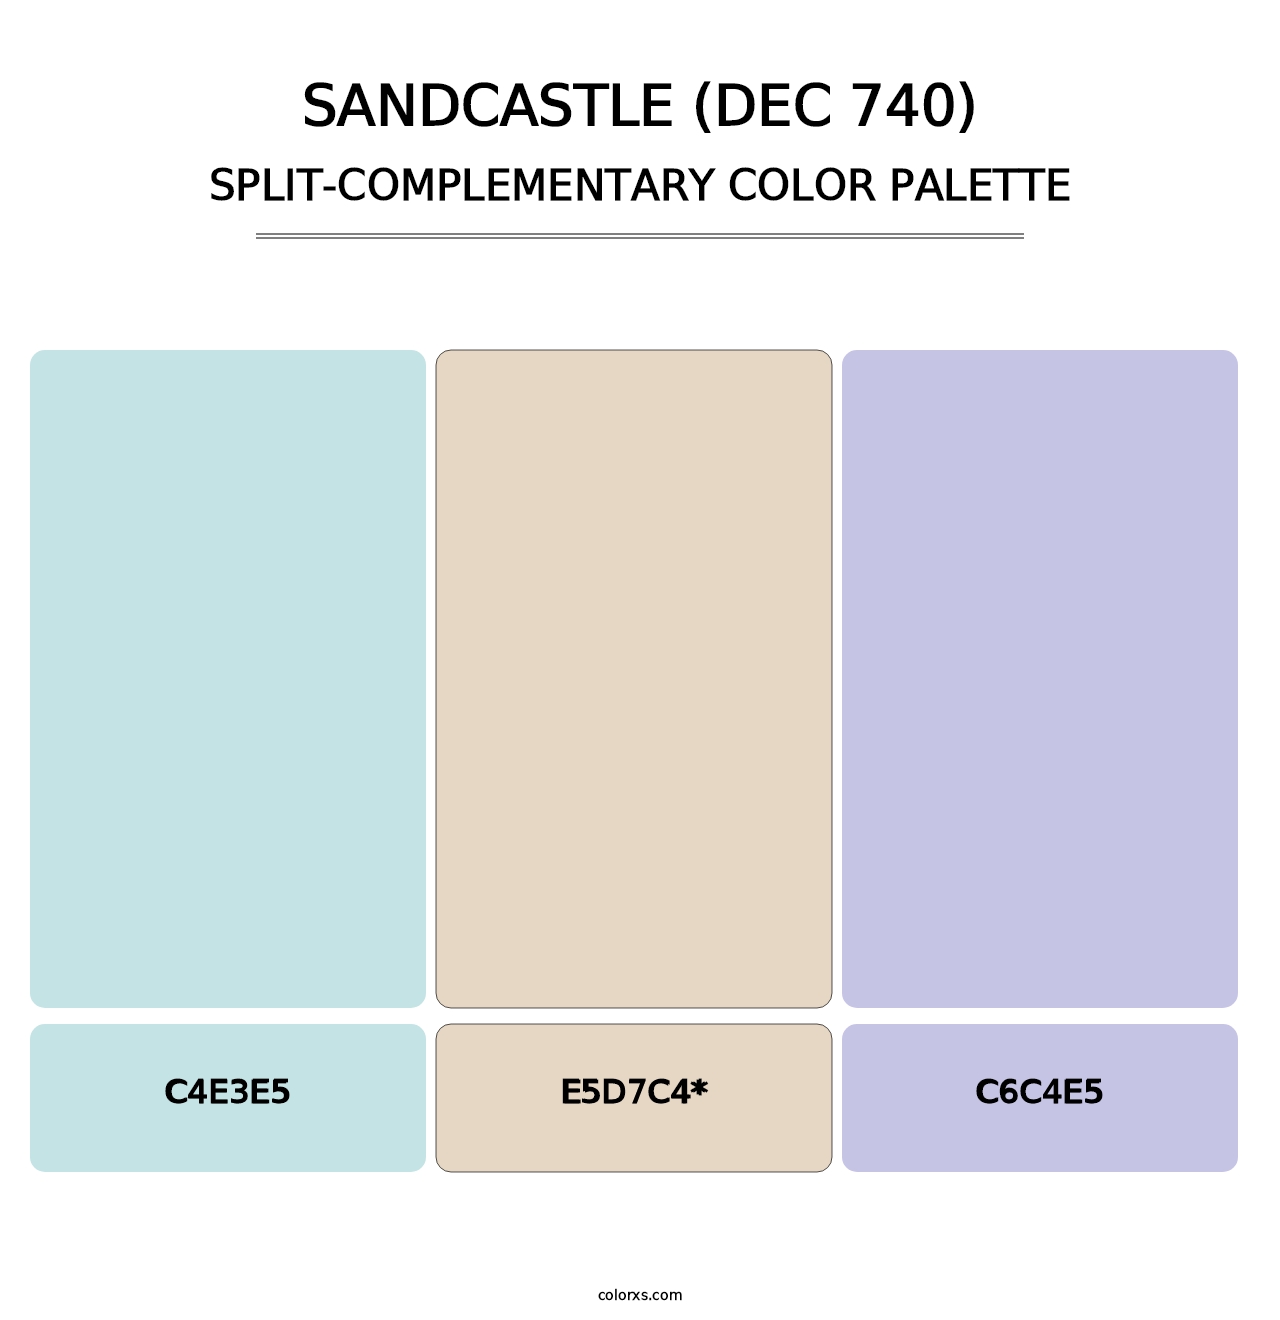 Sandcastle (DEC 740) - Split-Complementary Color Palette